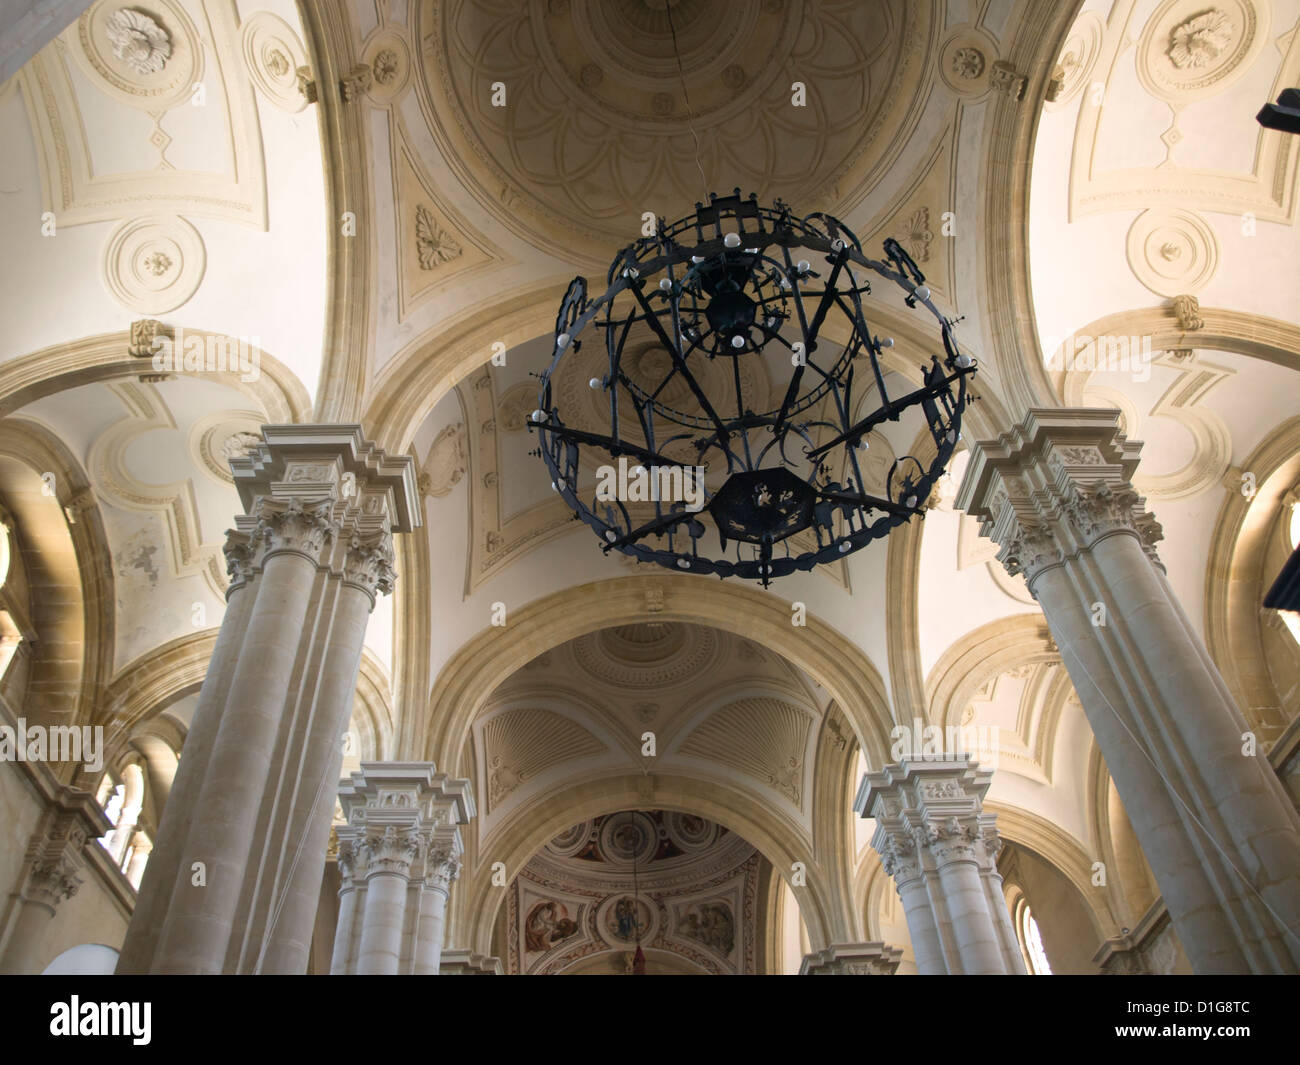 Patrimonio de la Humanidad Baeza ,Andalucía España, detalle de iglesia con columnas de techo un candelabro, Catedral de la Natividad de Nuestra Señora de Baeza Foto de stock